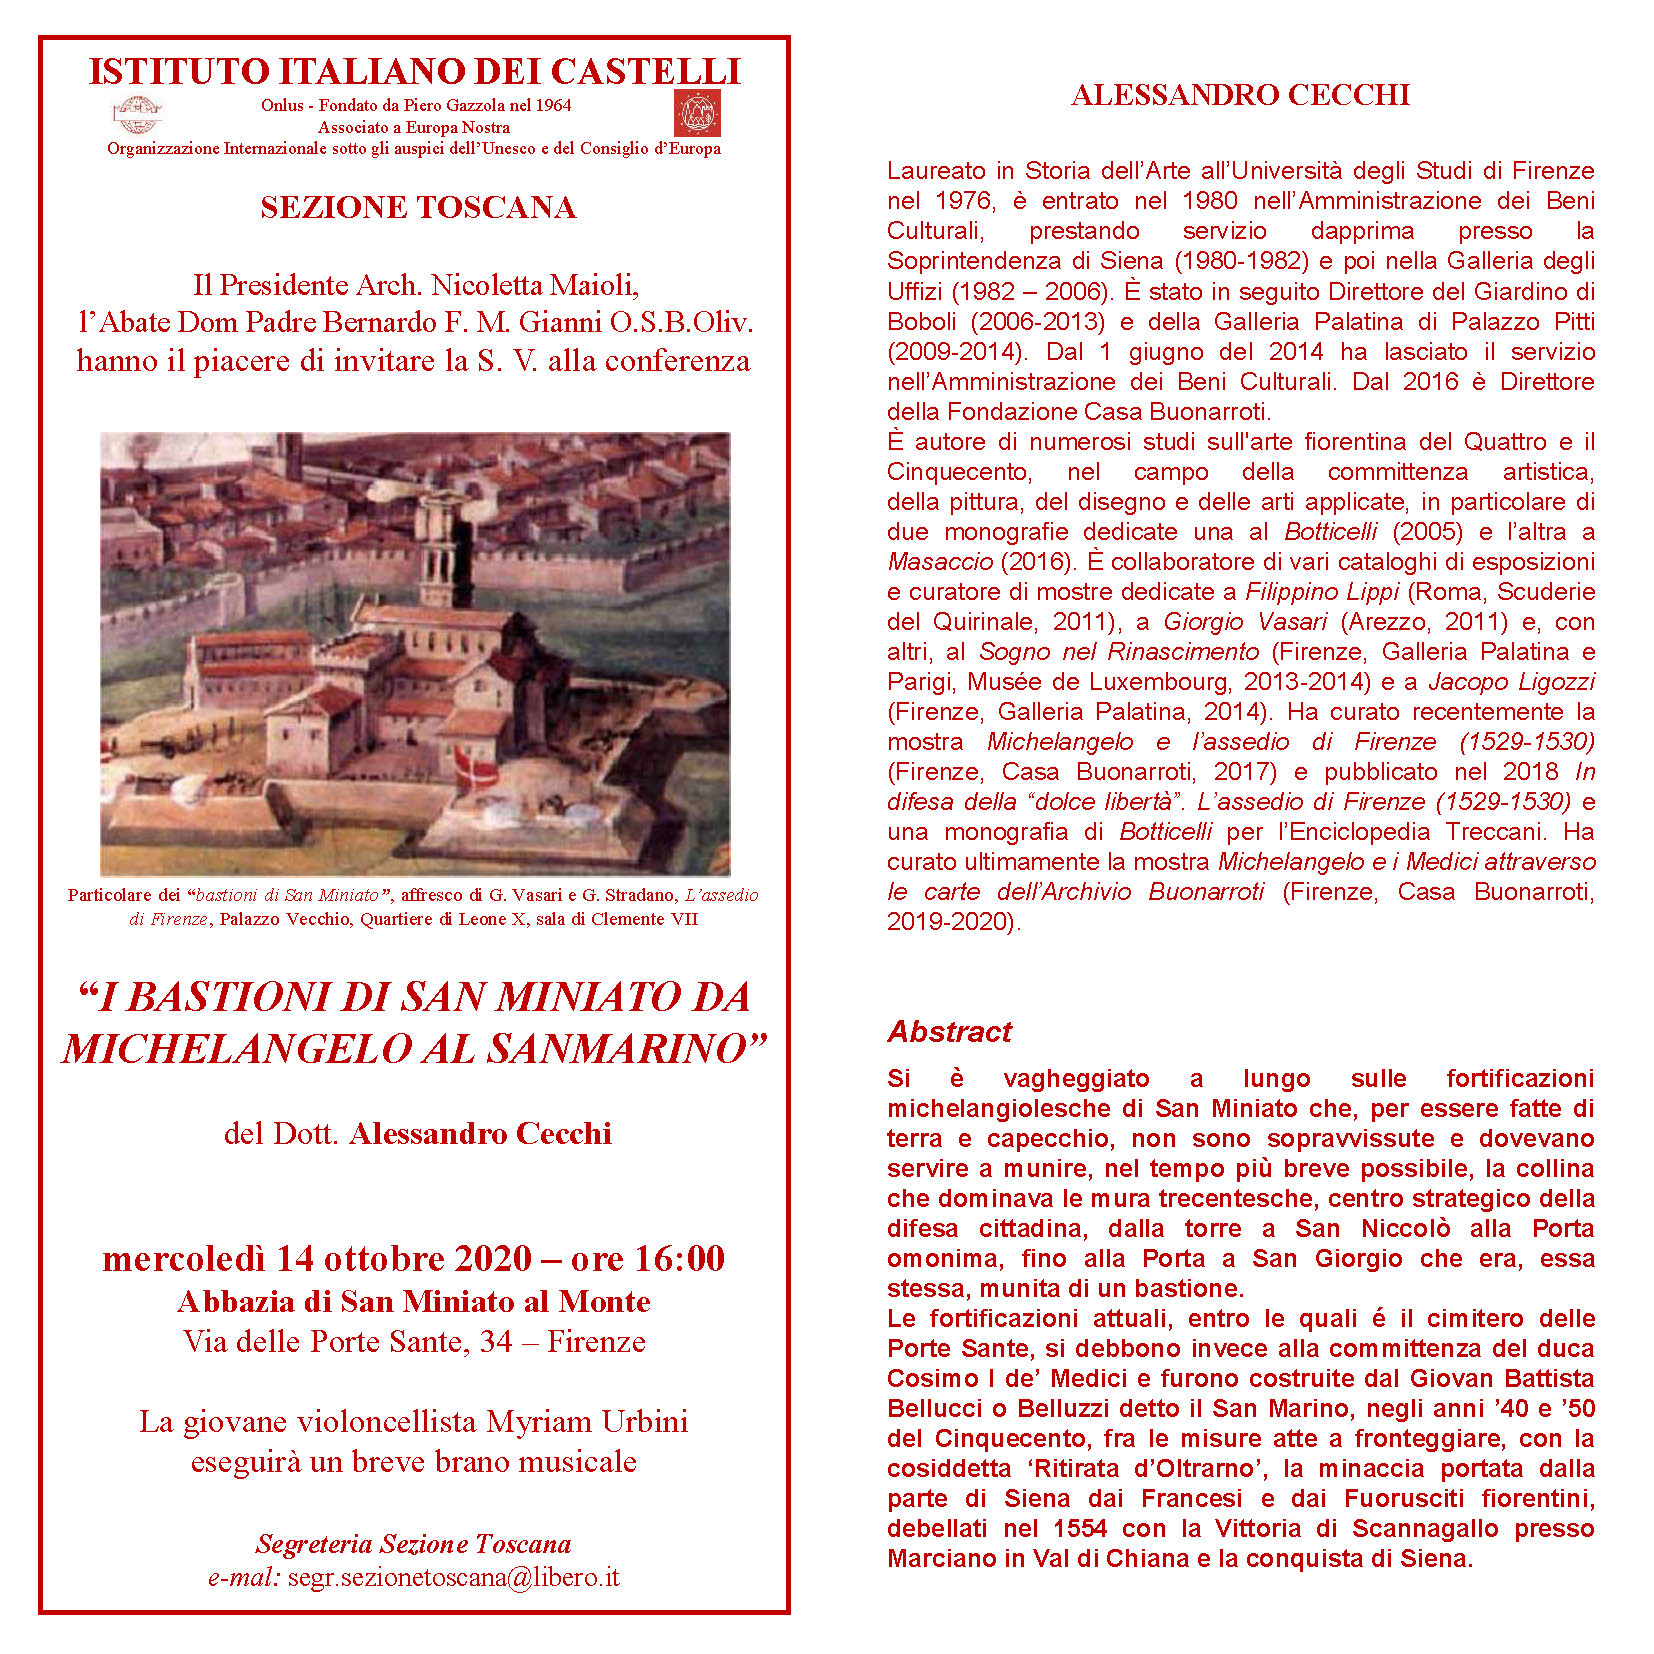 Sezione Toscana – Conferenza: “I bastioni di San Miniato da Michelangelo al Sanmarino”